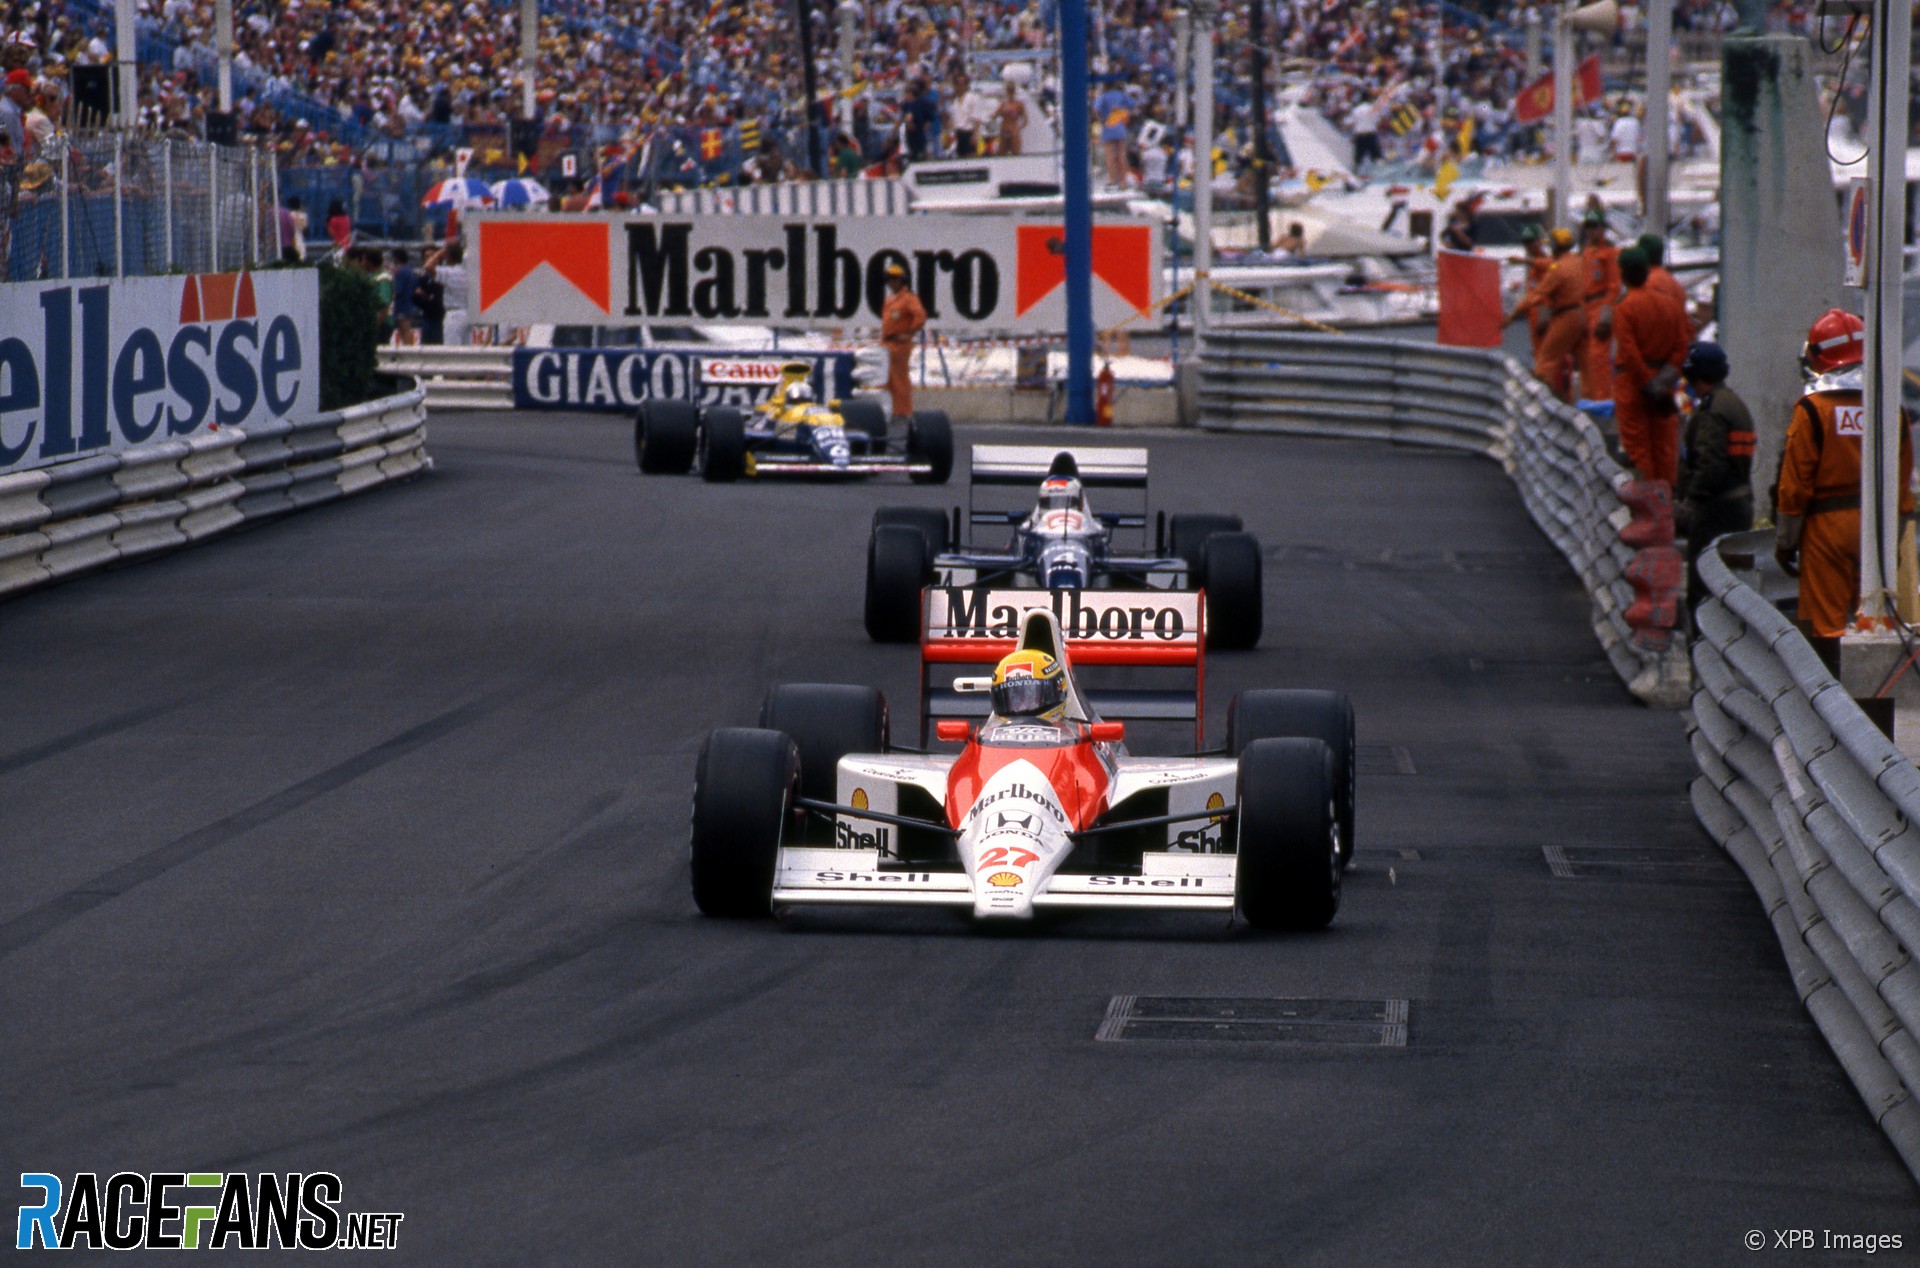 Ayrton Senna, Jean Alesi, Riccardo Patrese, Monaco, 1990